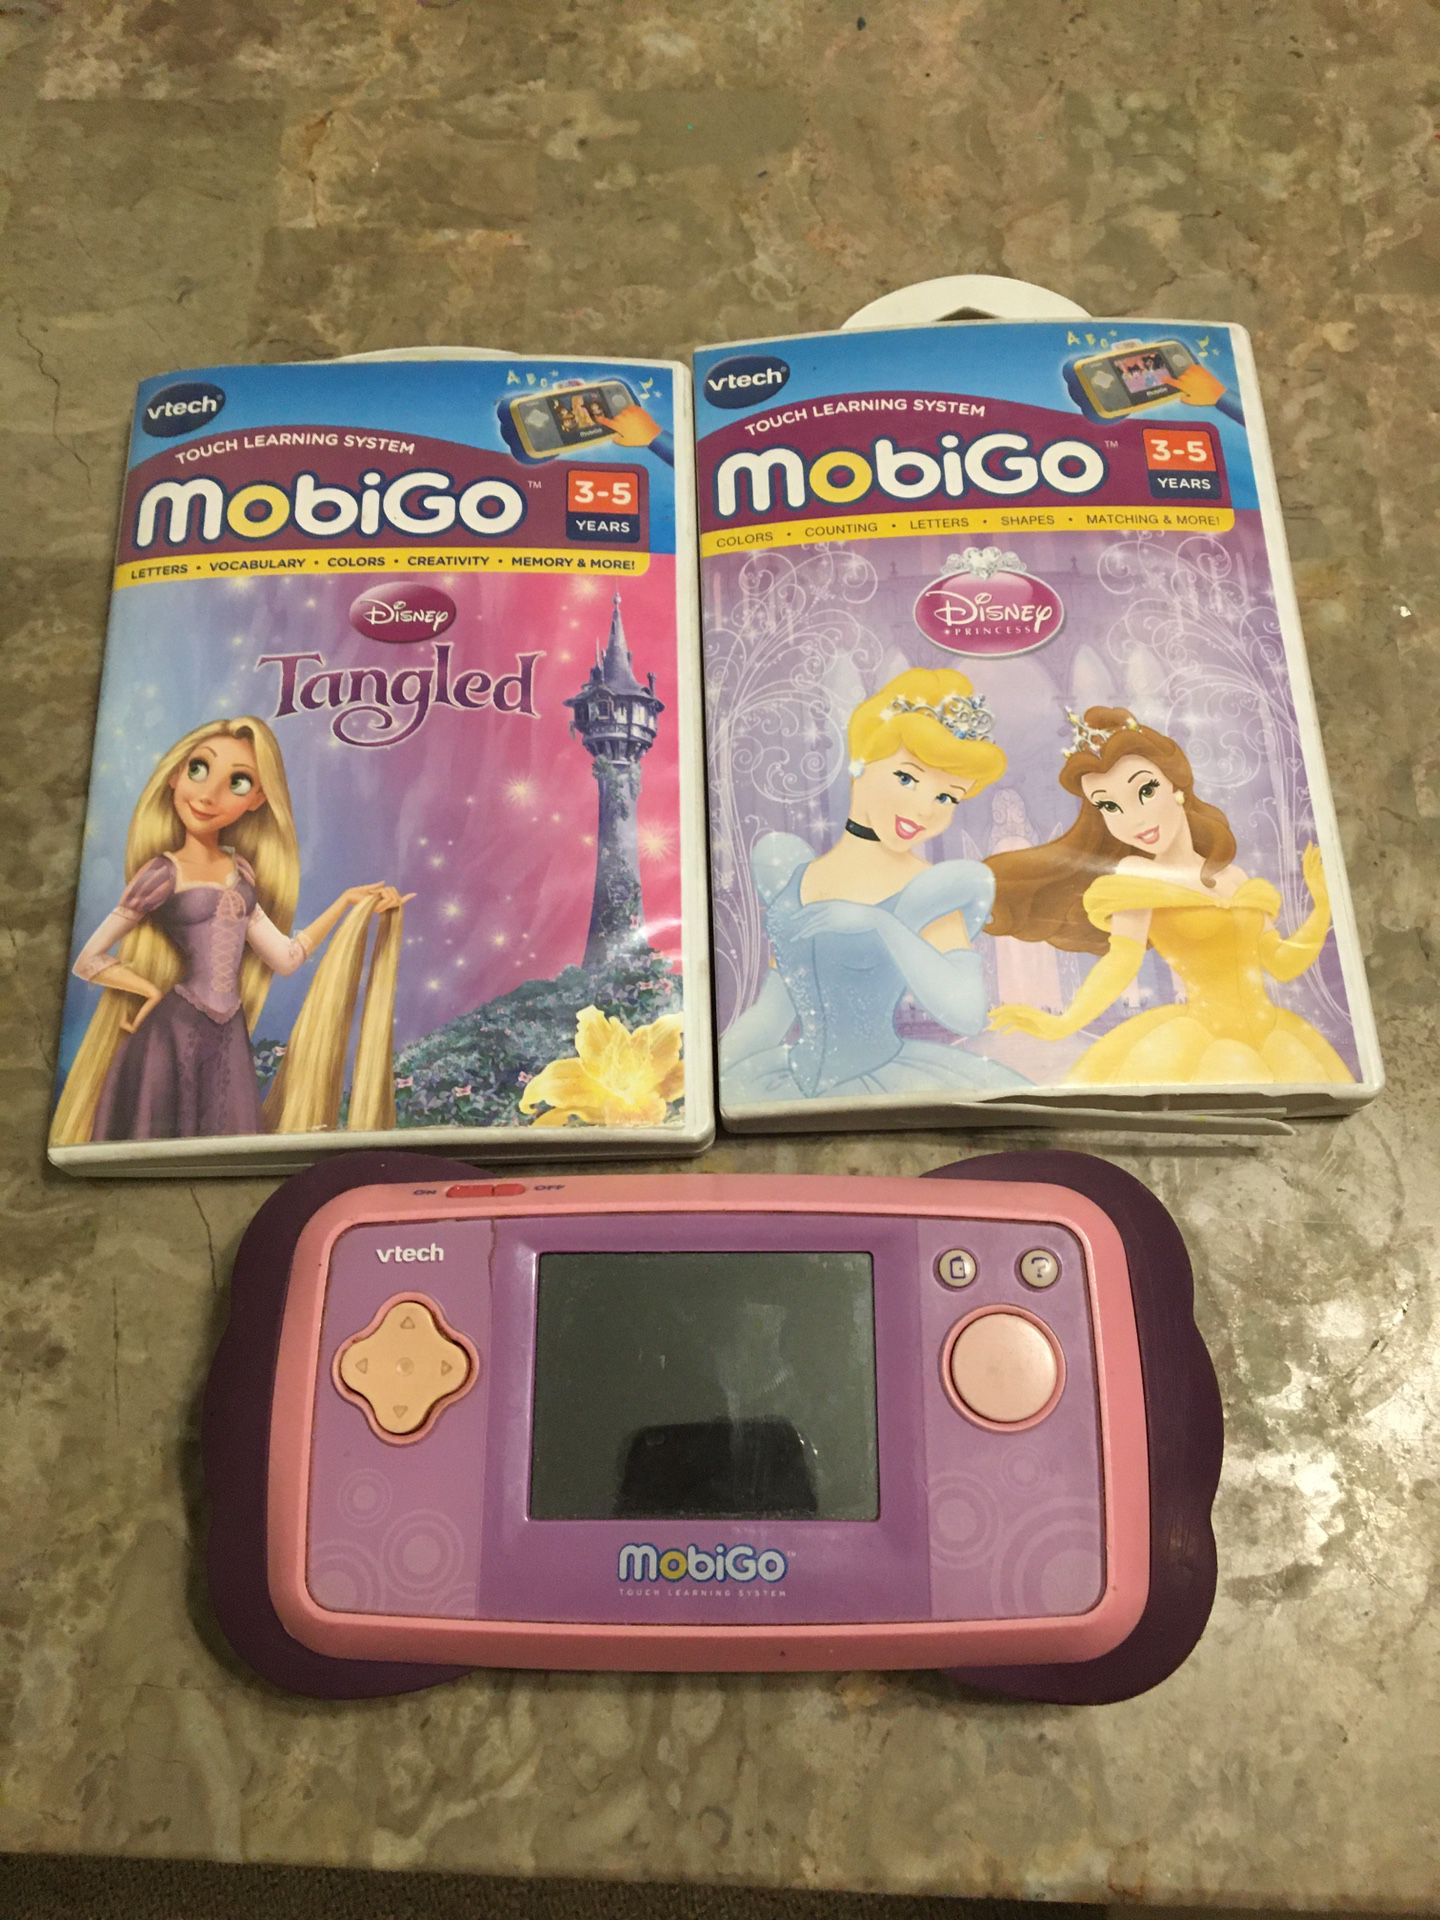 A MobiGo game